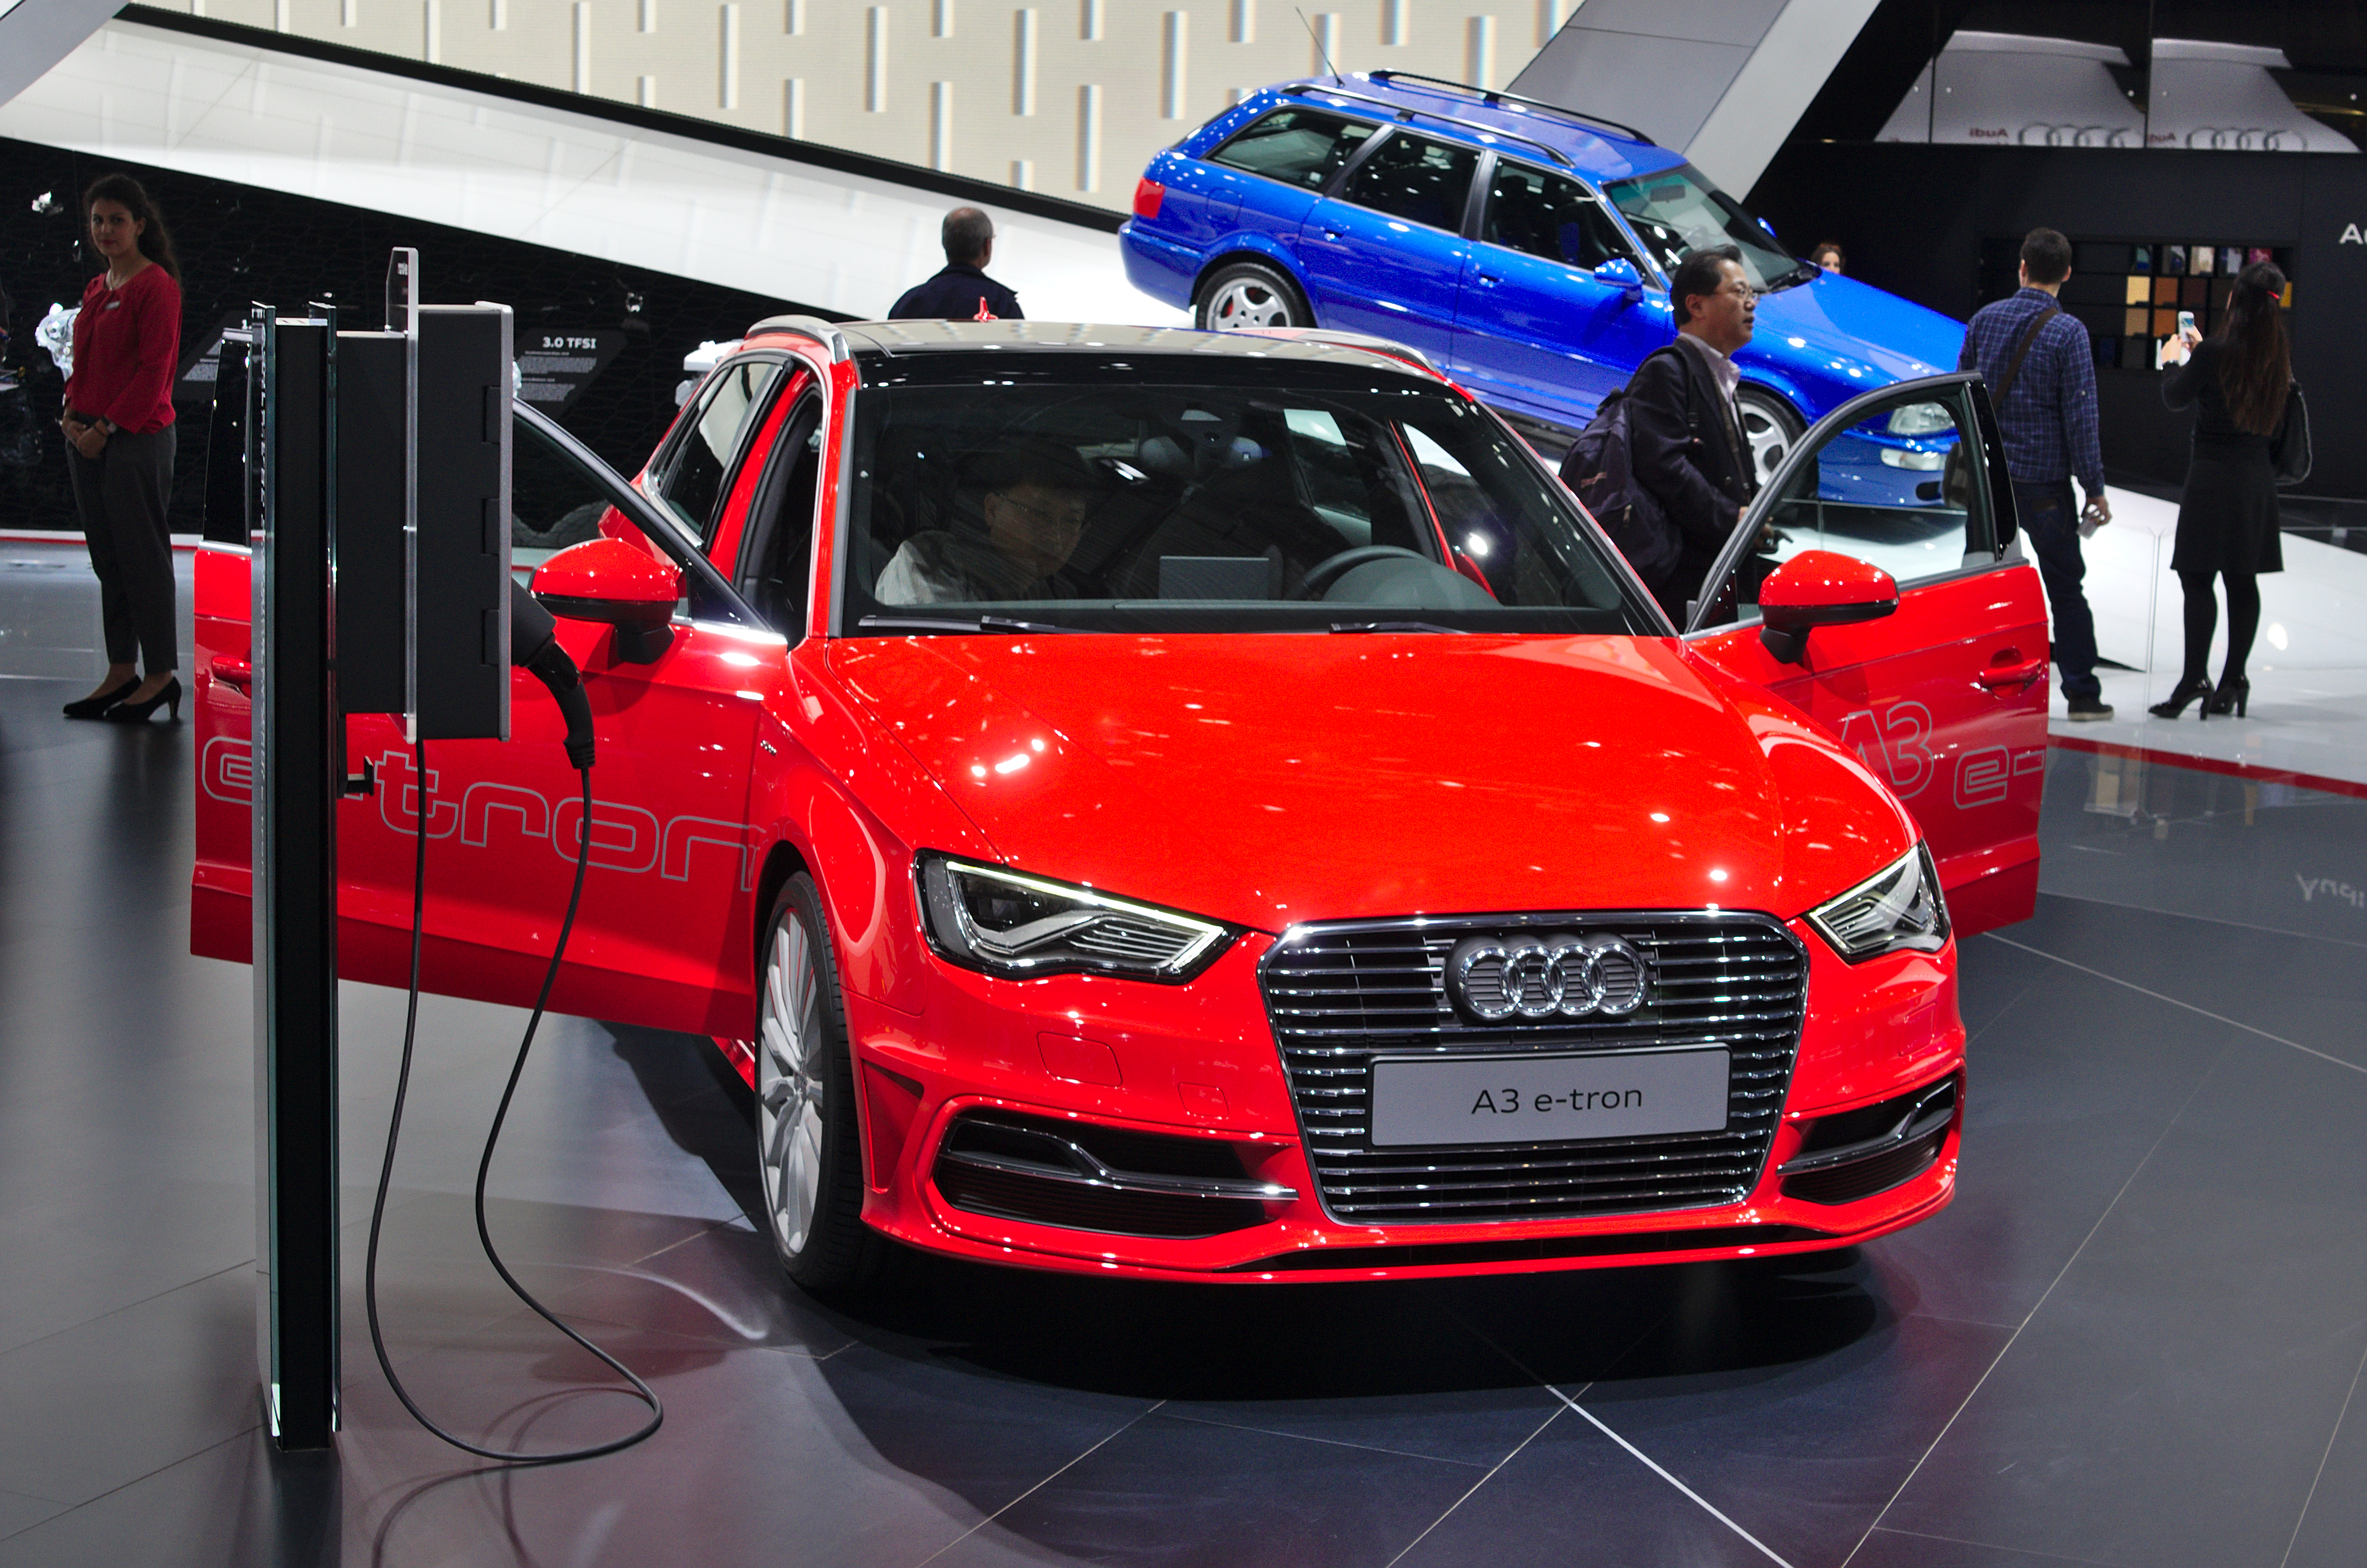 Salon de l'auto de Genève 2014 - 20140305 - Audi A3 e-tron 1